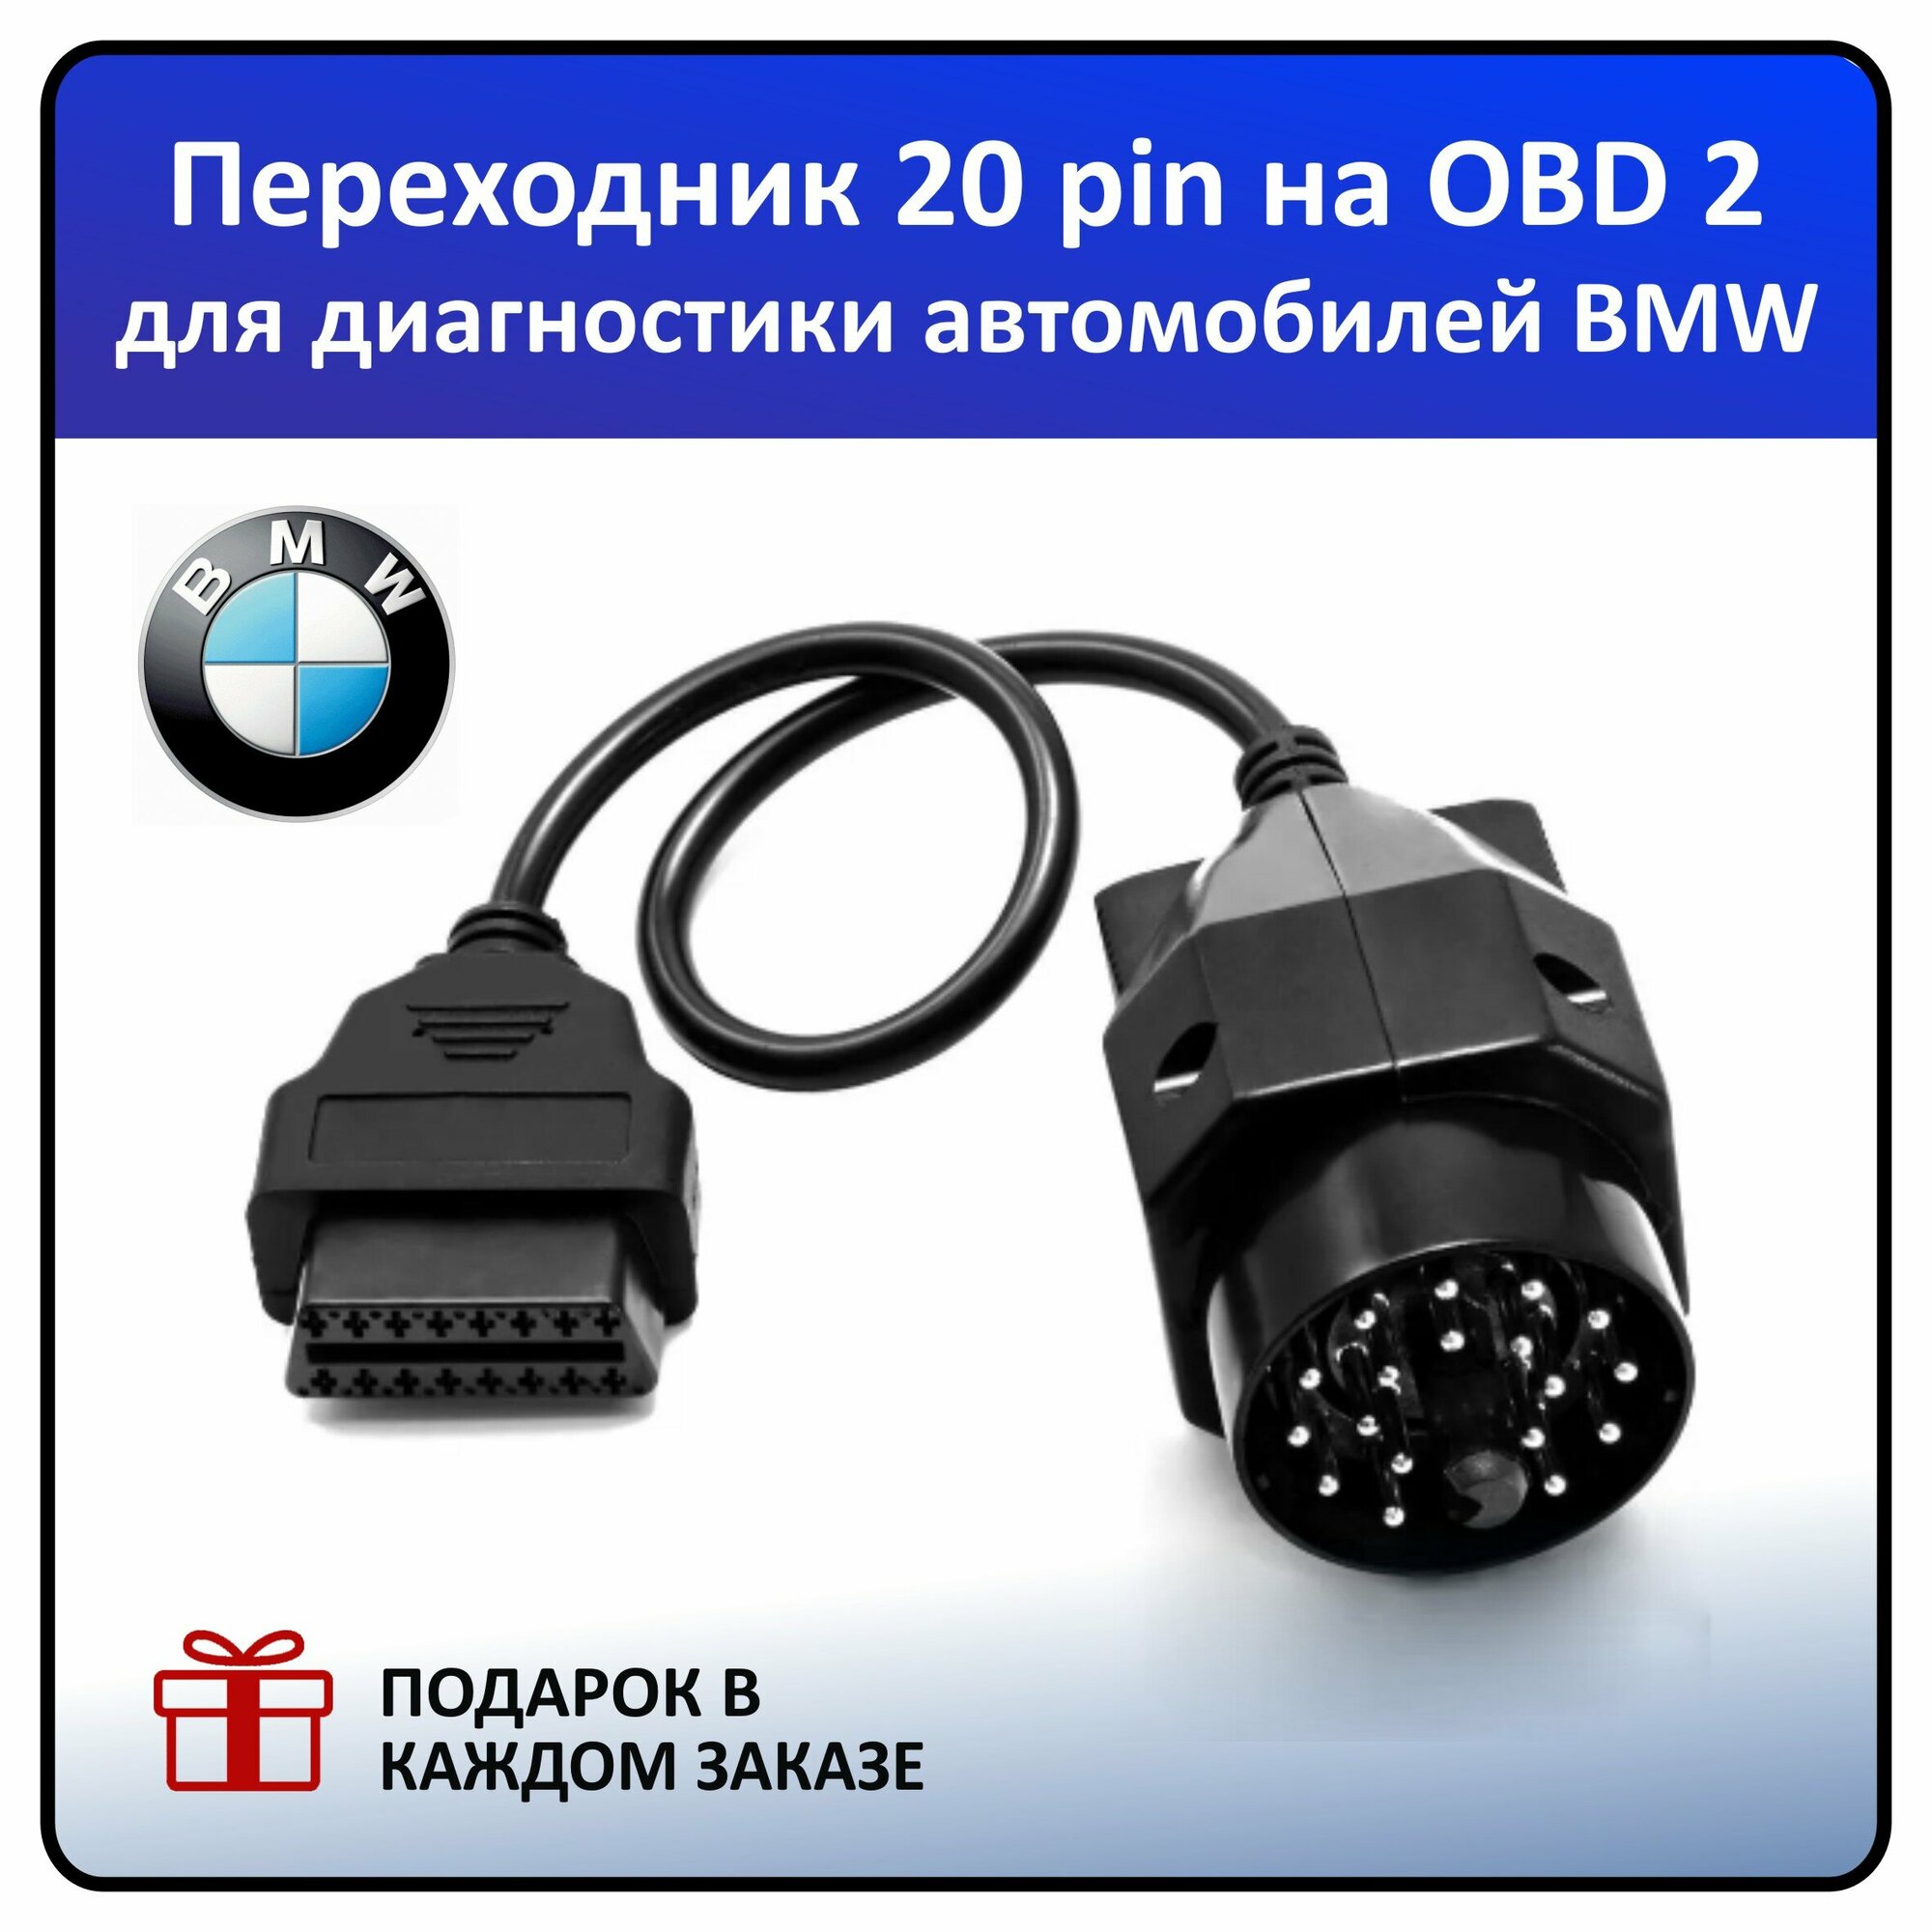 Кабель-Переходник BMW20 pin - OBD2 16 pin (для автомобилей BMW)